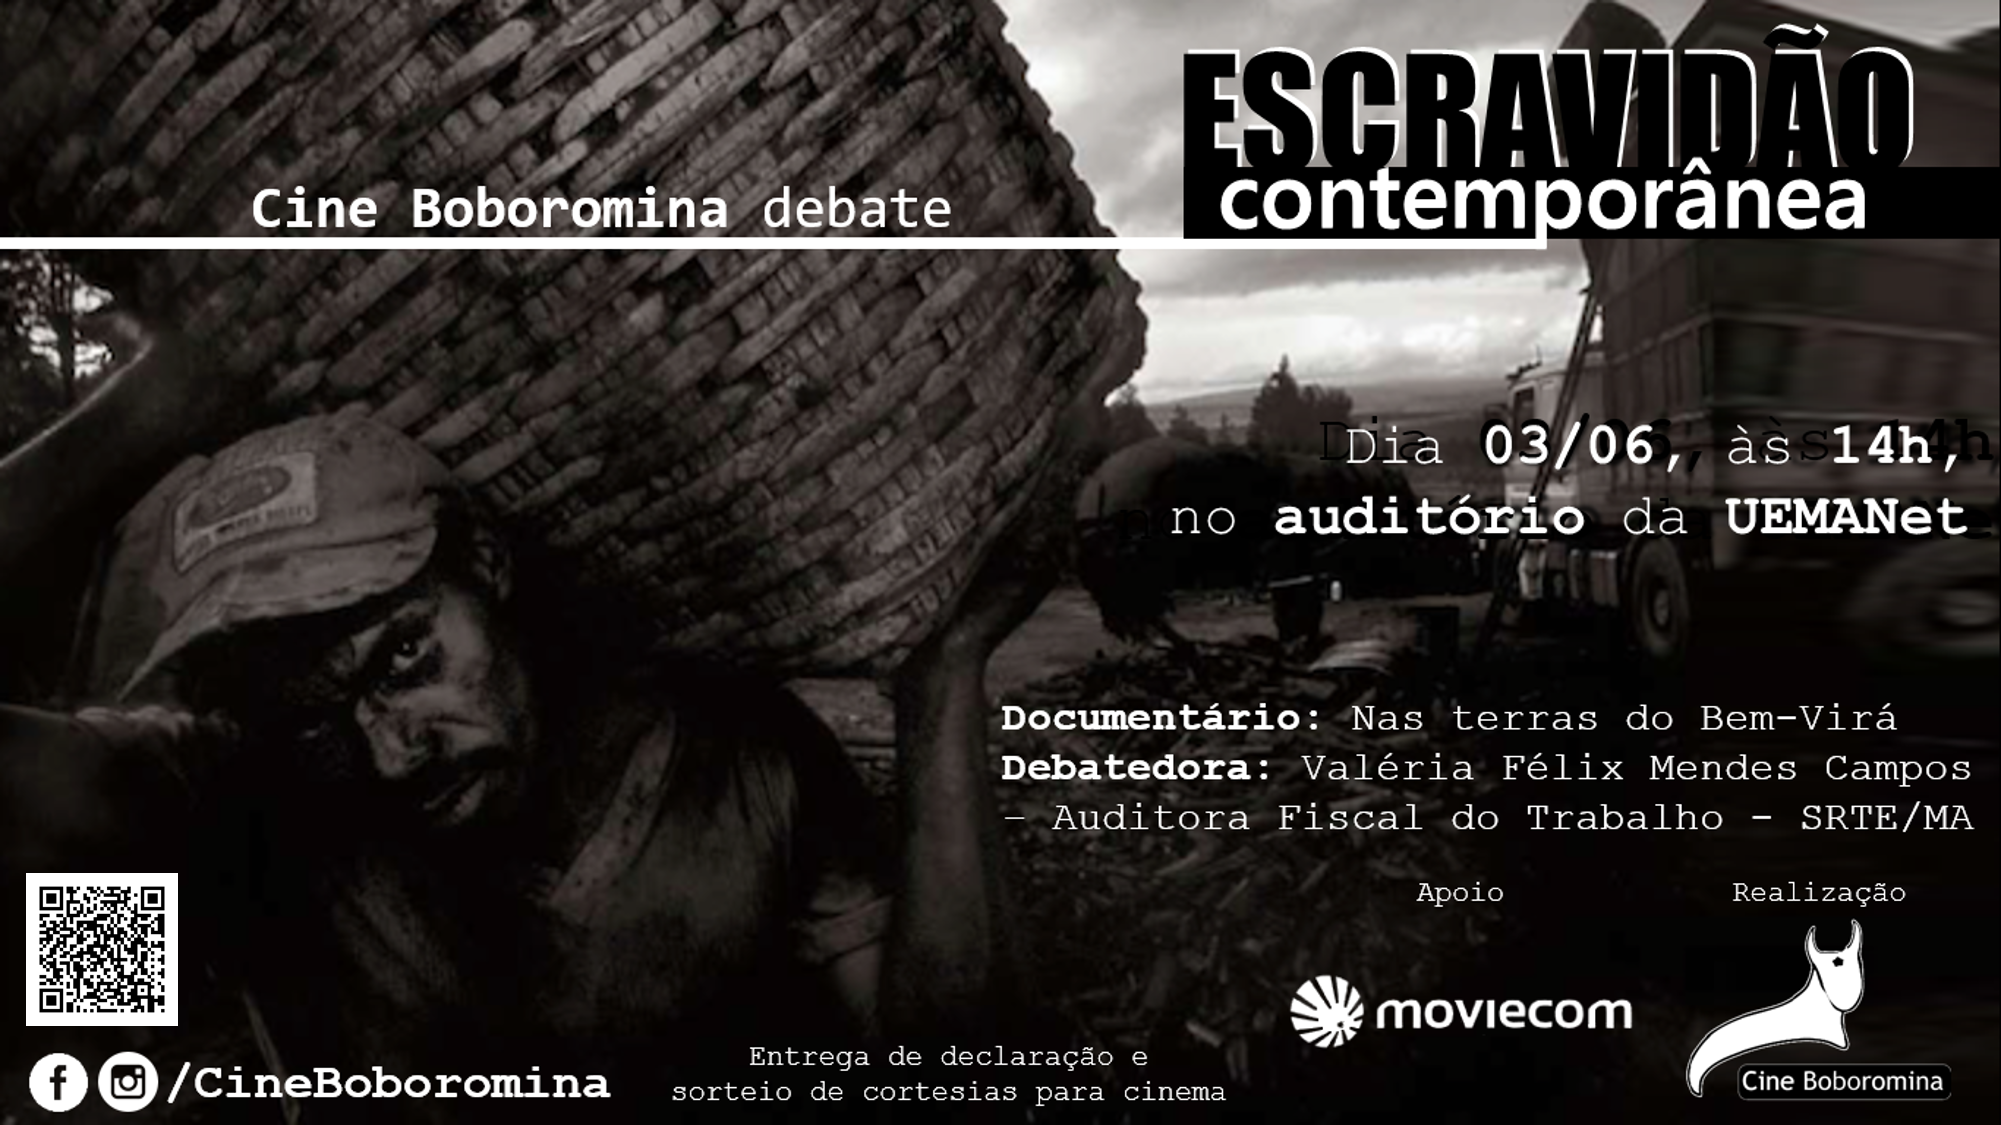 Cine Boboromina debaterá sobre escravidão contemporânea